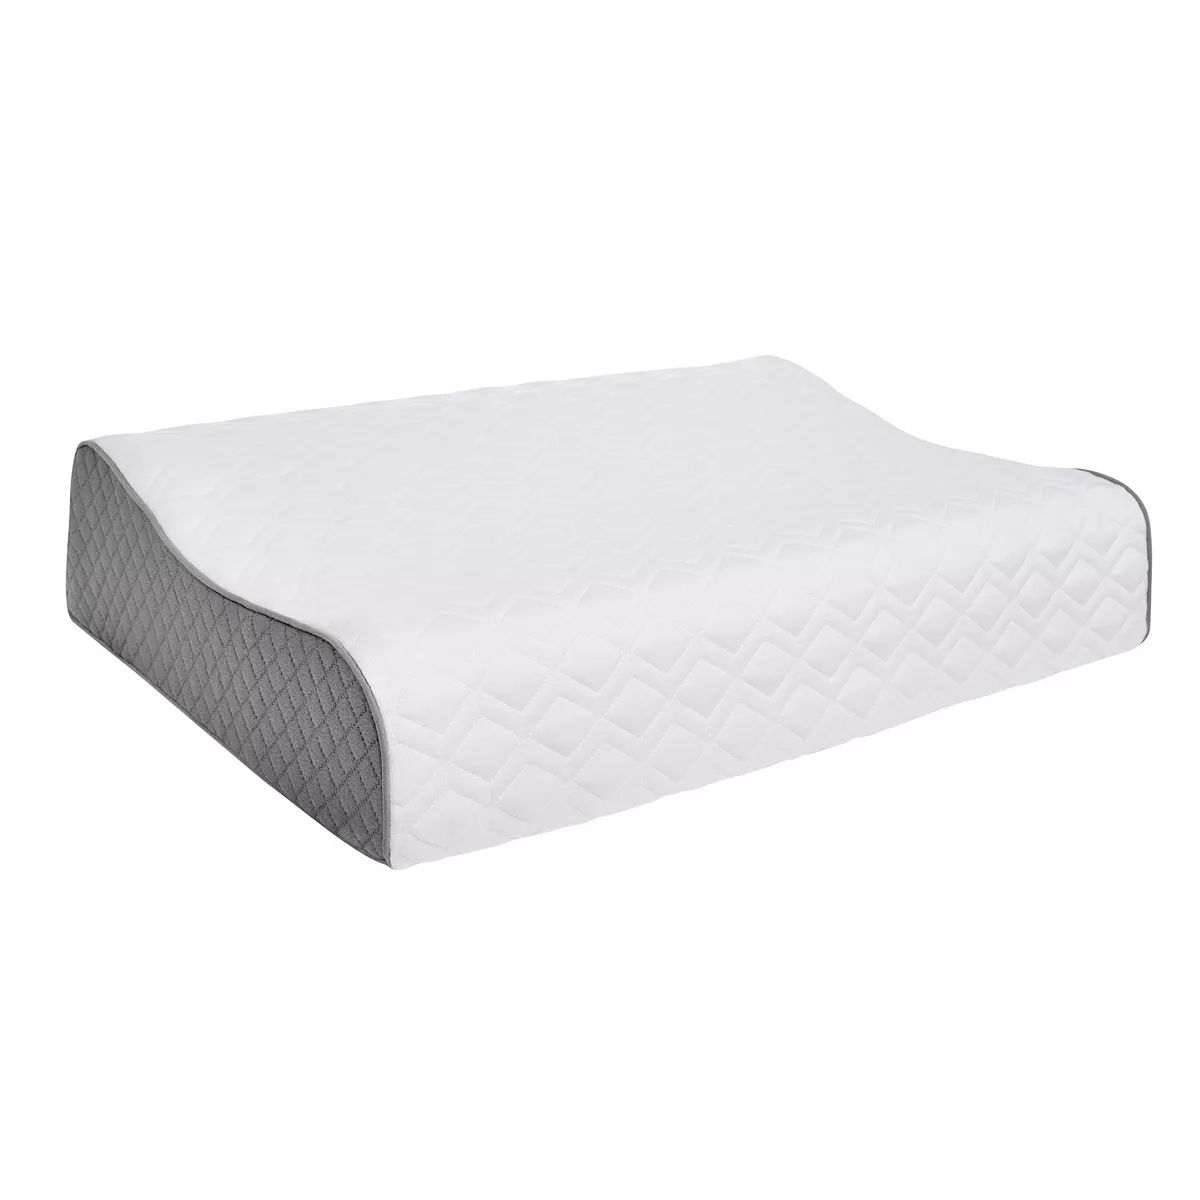 Sealy Memory Foam Contour Pillow | Kohl's